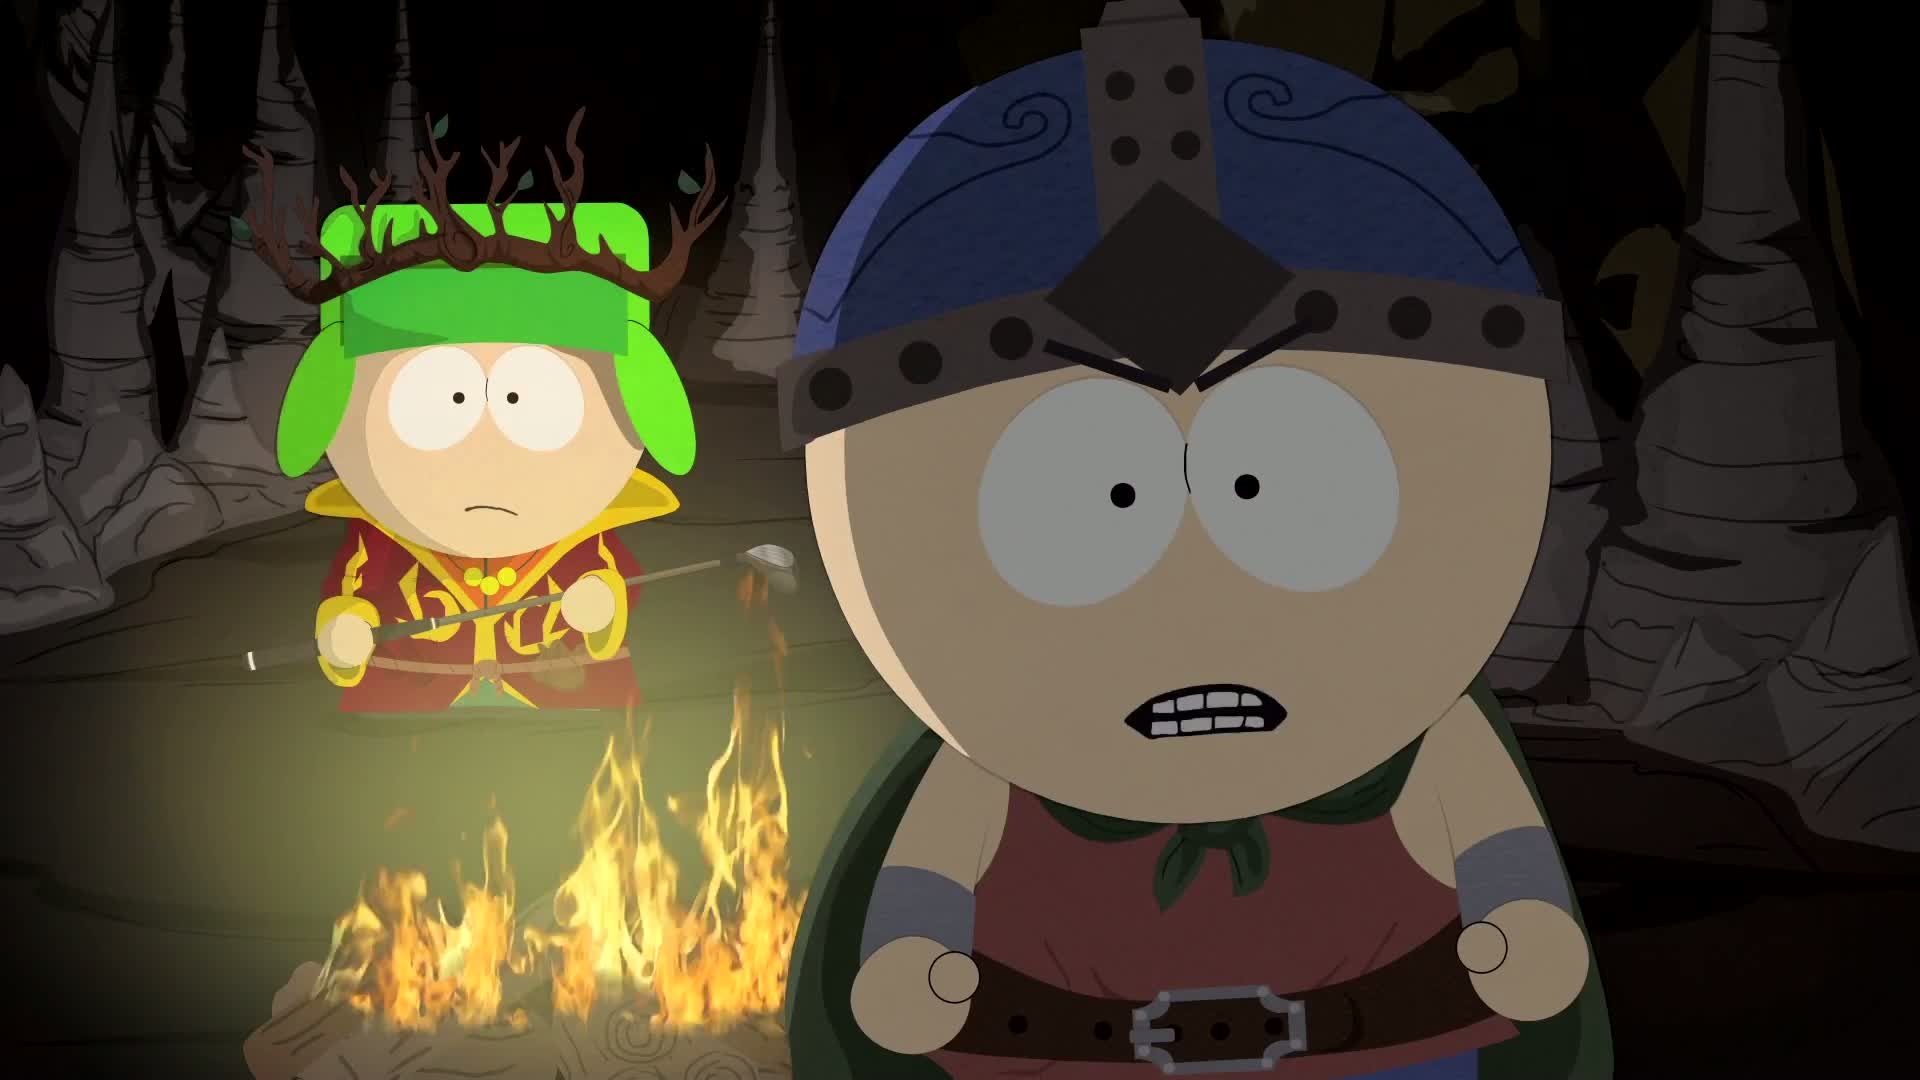 South Park The Stick of Truth - E3 trailer